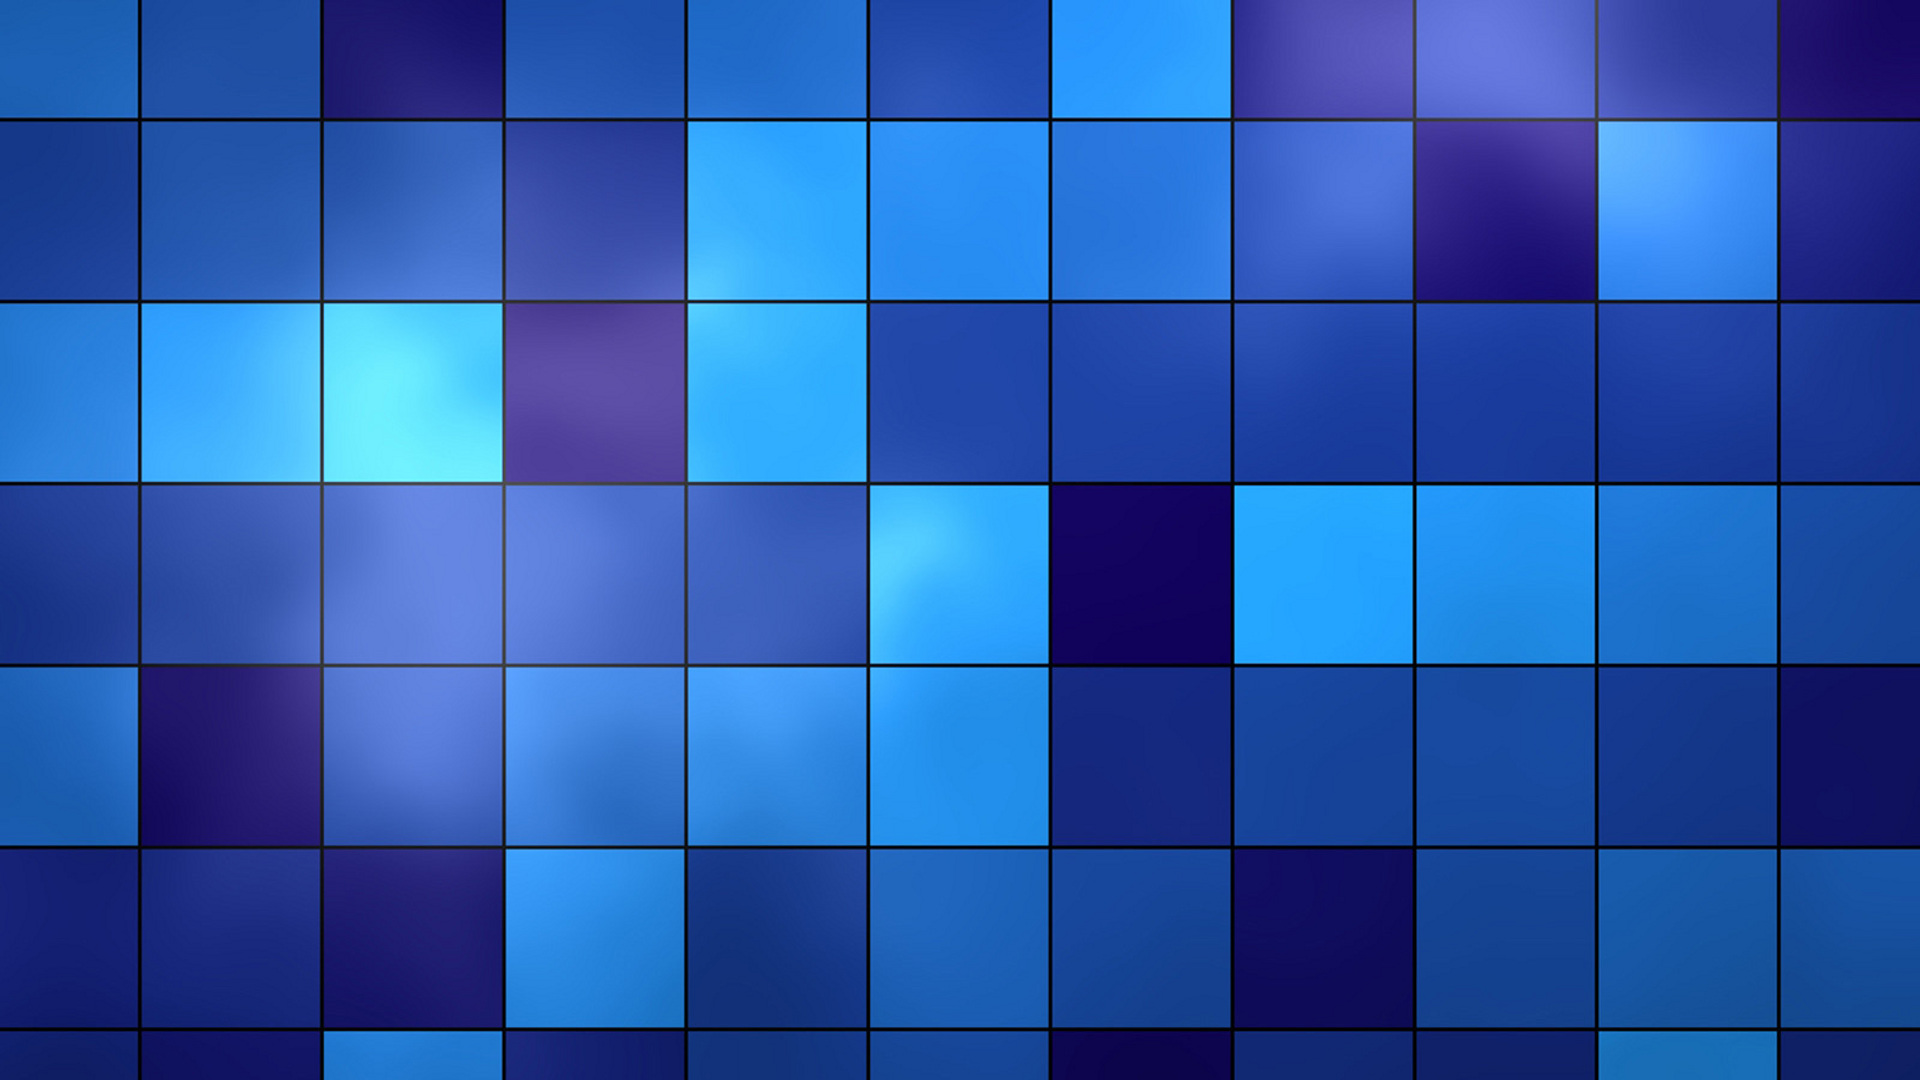 Красивые обои фон синий   подборка 25 картинок (17)